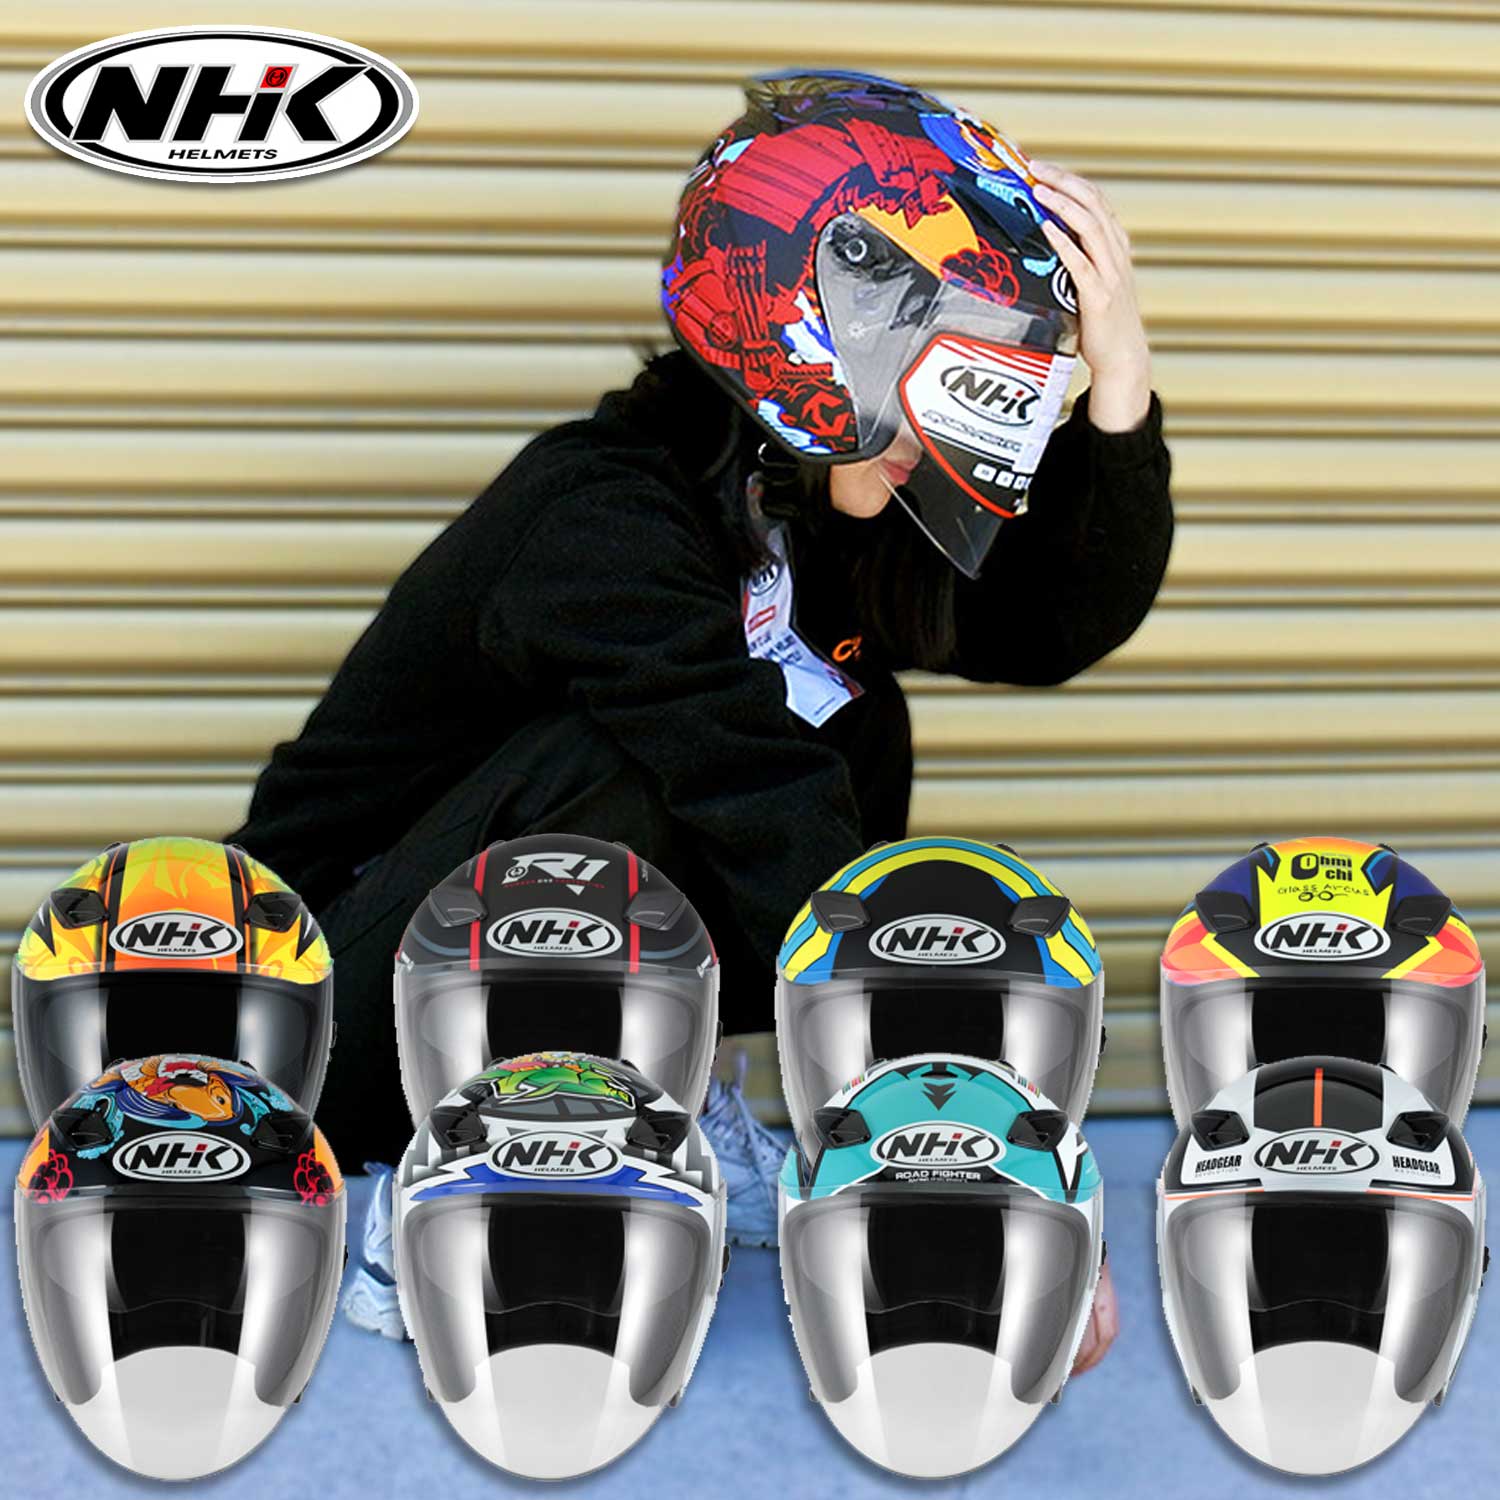 NHK R1 캐럴윈터 캐럴브르노 나폴레옹 시노이드 오토바이 라이더 그래픽 오픈페이스 헬멧